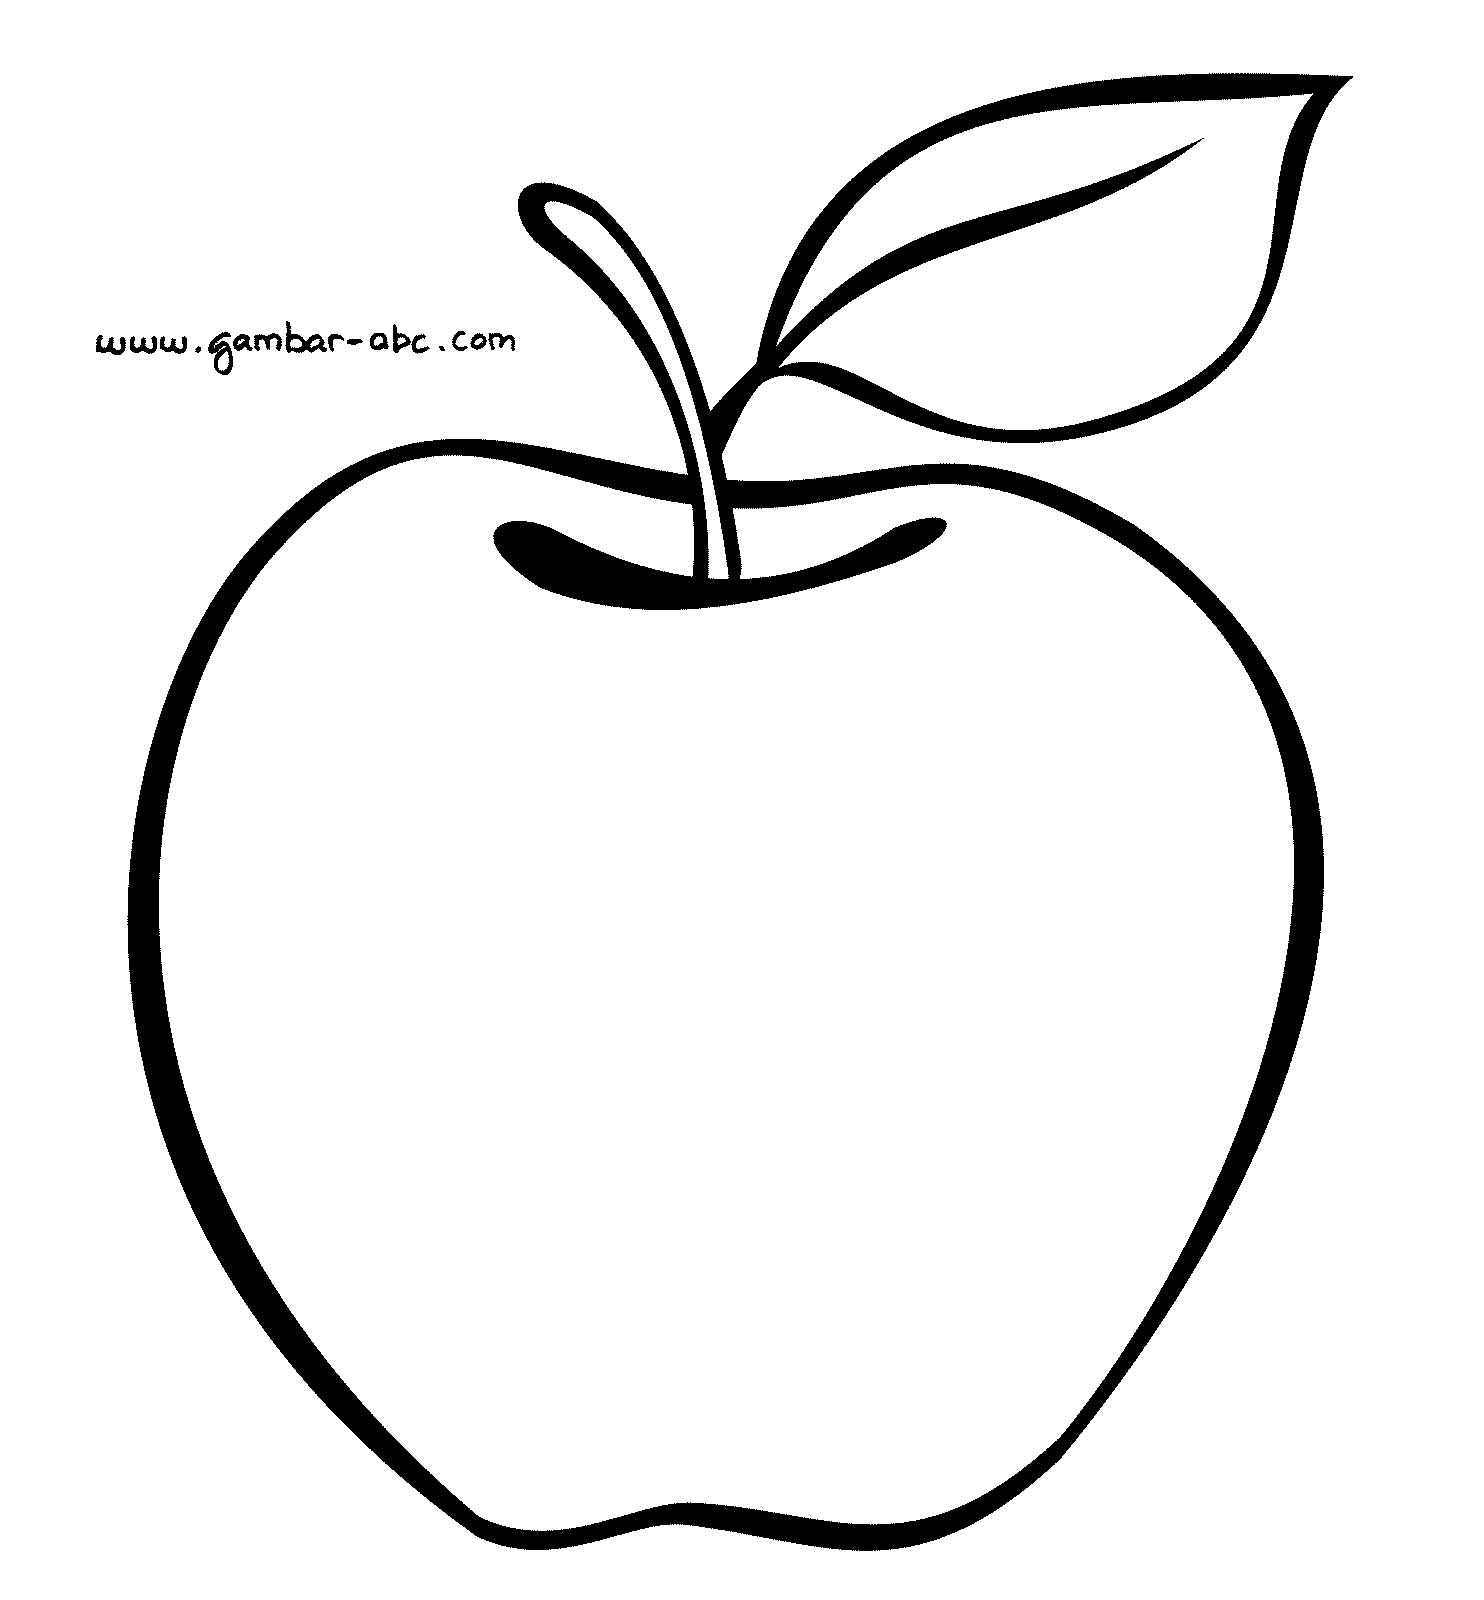 Contoh Gambar Buah Apel